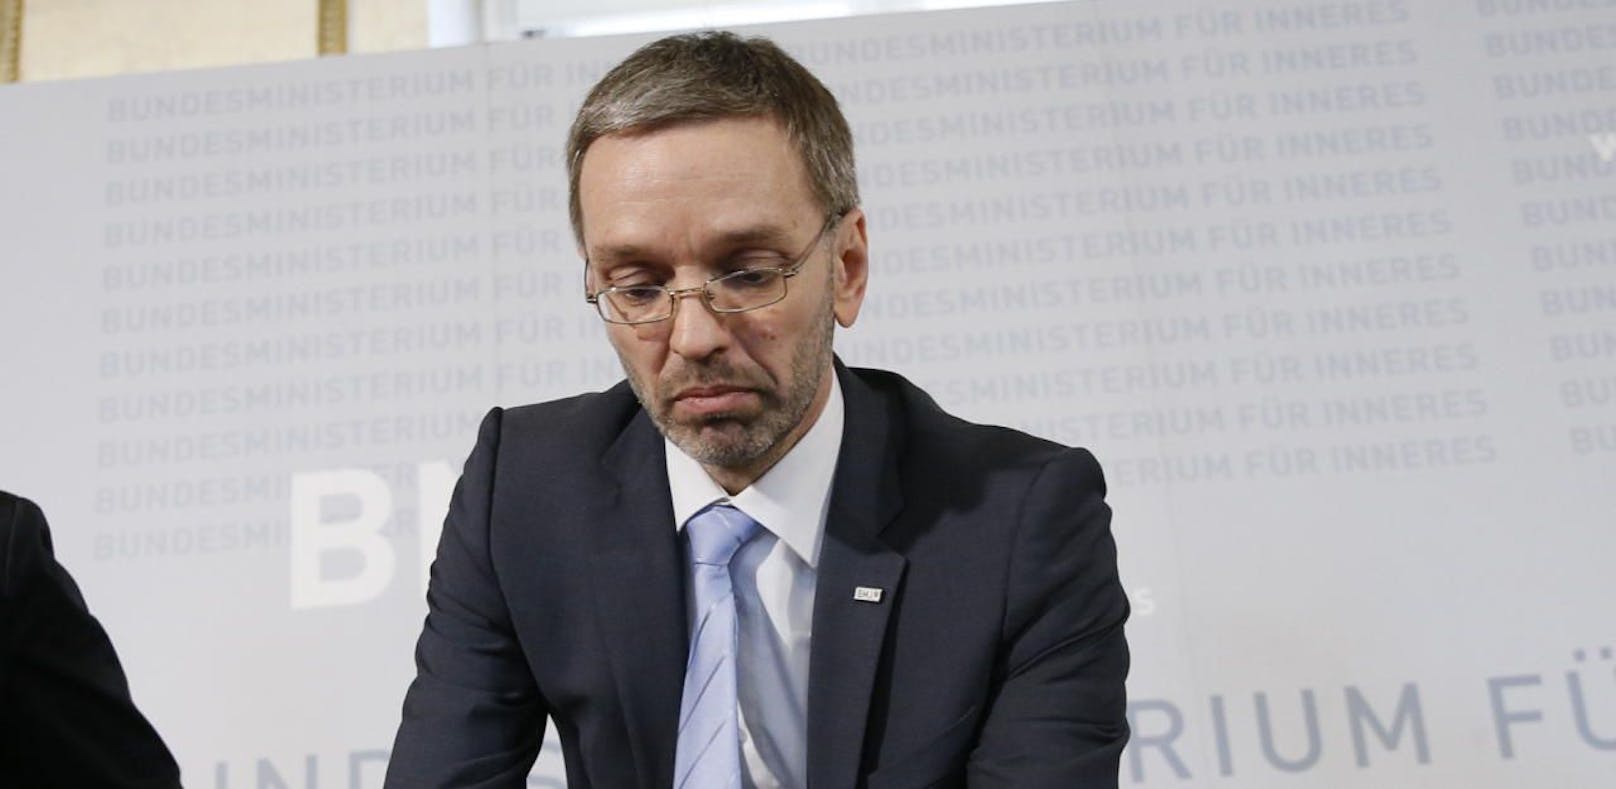 Innenminister Herbert Kickl (FPÖ) ist wegen der BVT-Causa unter Beschuss